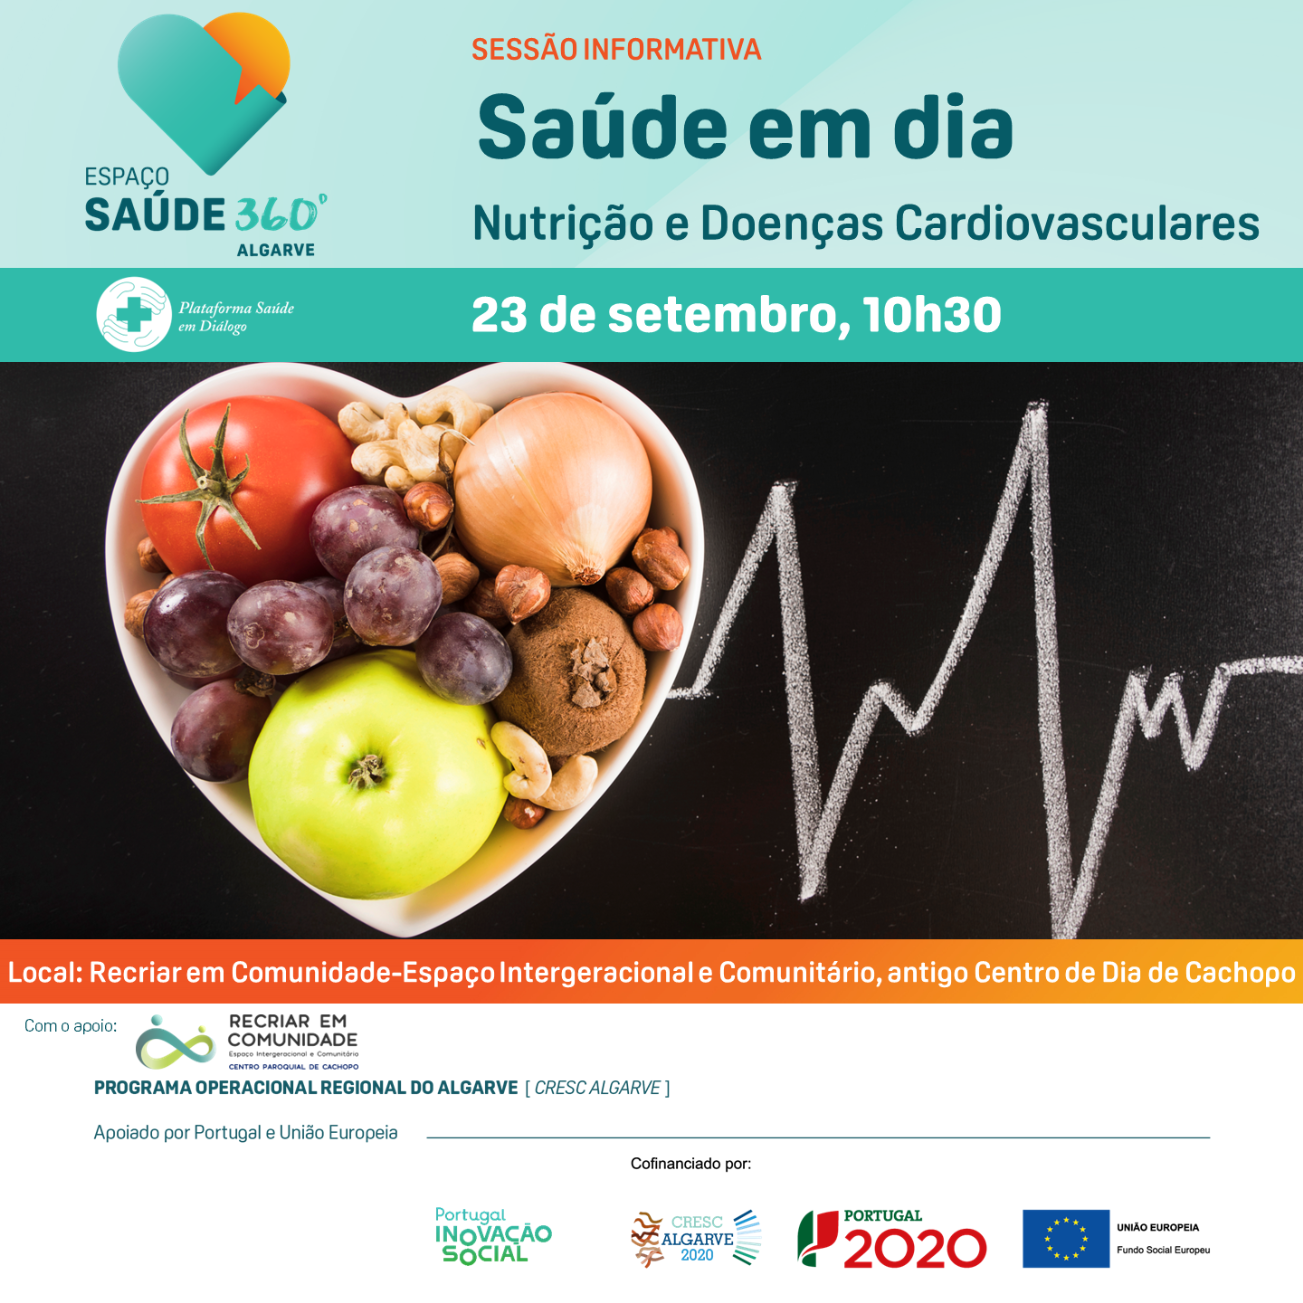 Espaço Saúde 360º Algarve promove sessão informativa sobre nutrição e a saúde cardiovascular